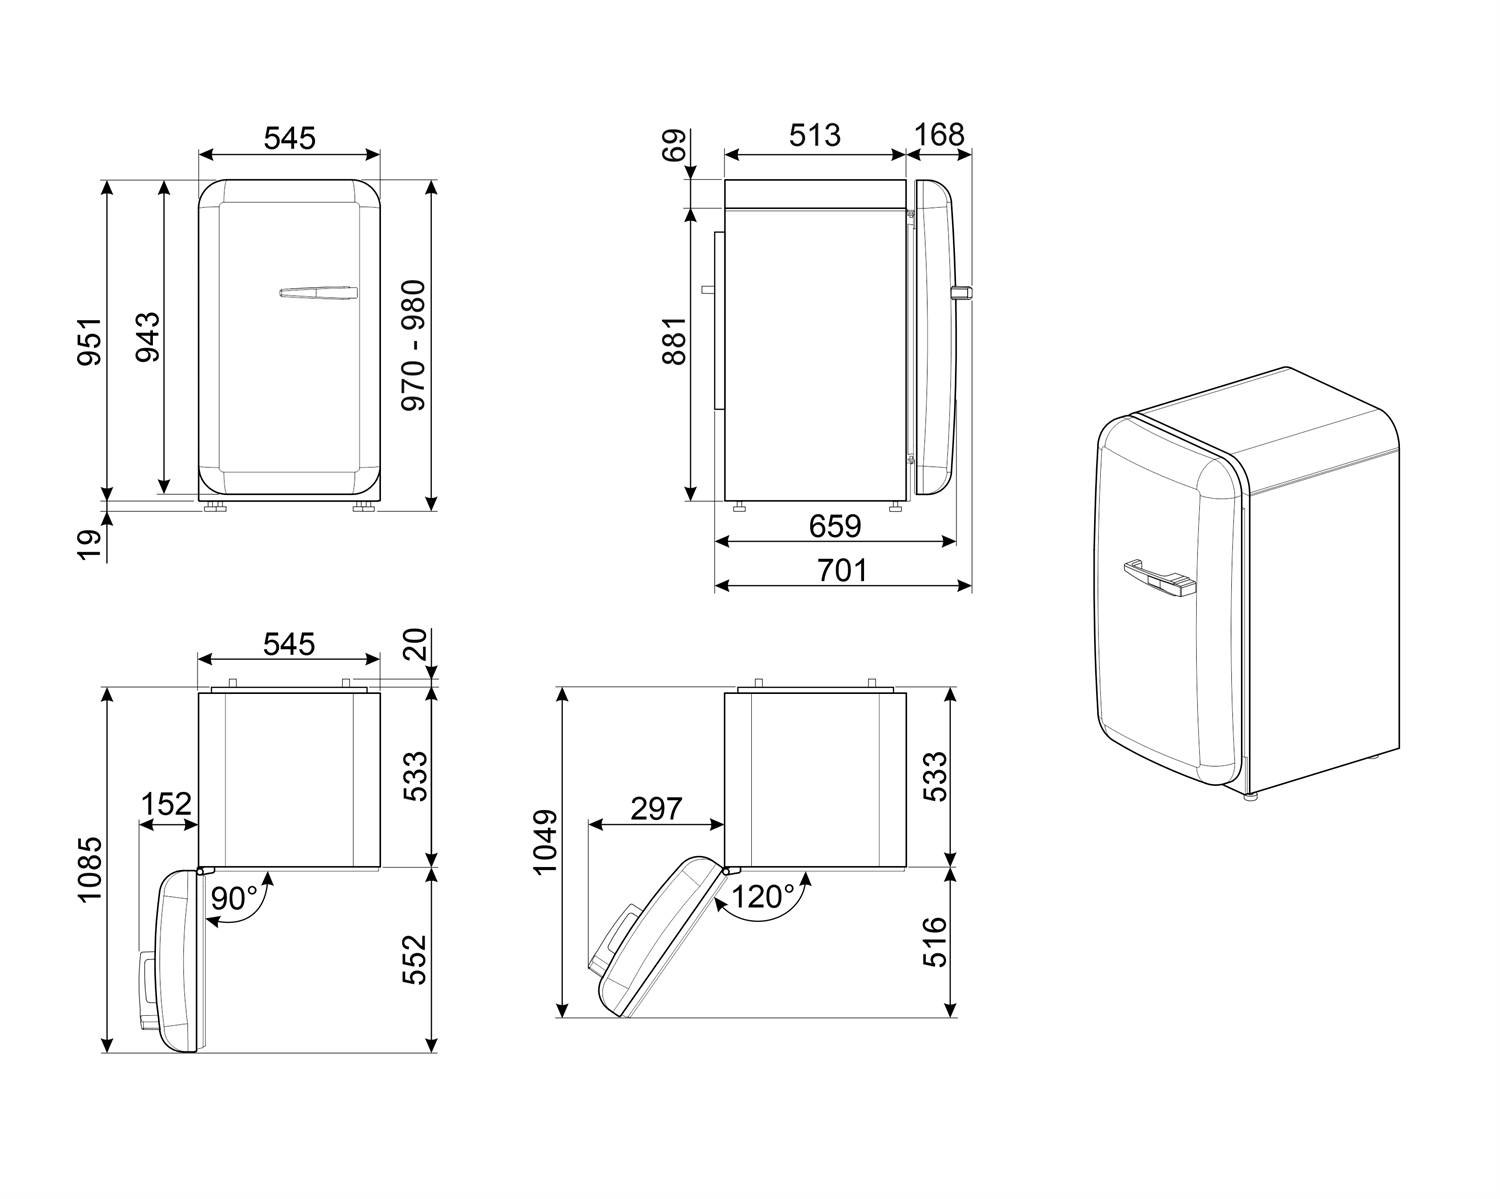 Maattekening SMEG koelkast tafelmodel crème FAB10HLCR5